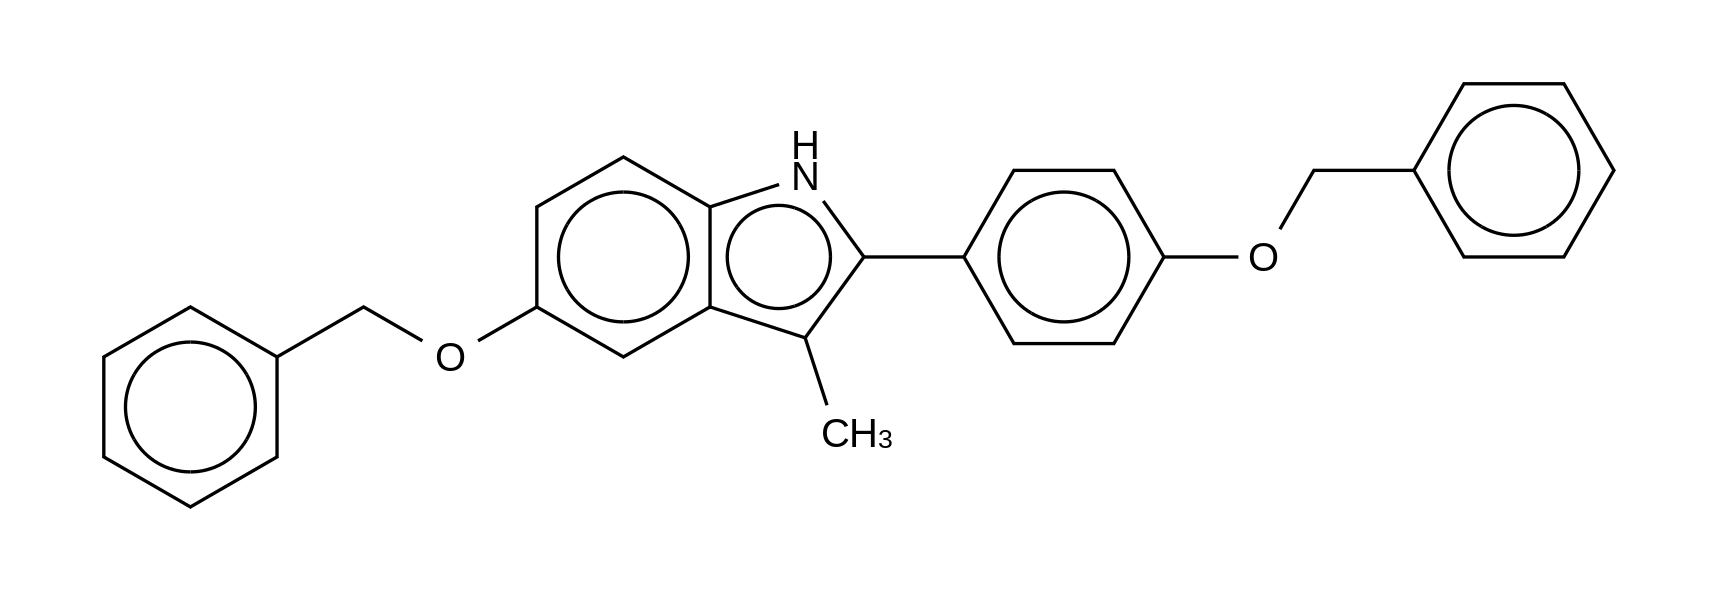 3-Methyl-5-(phenylmethoxy)-2-[4-(phenylmethoxy)phenyl]-1H-indole